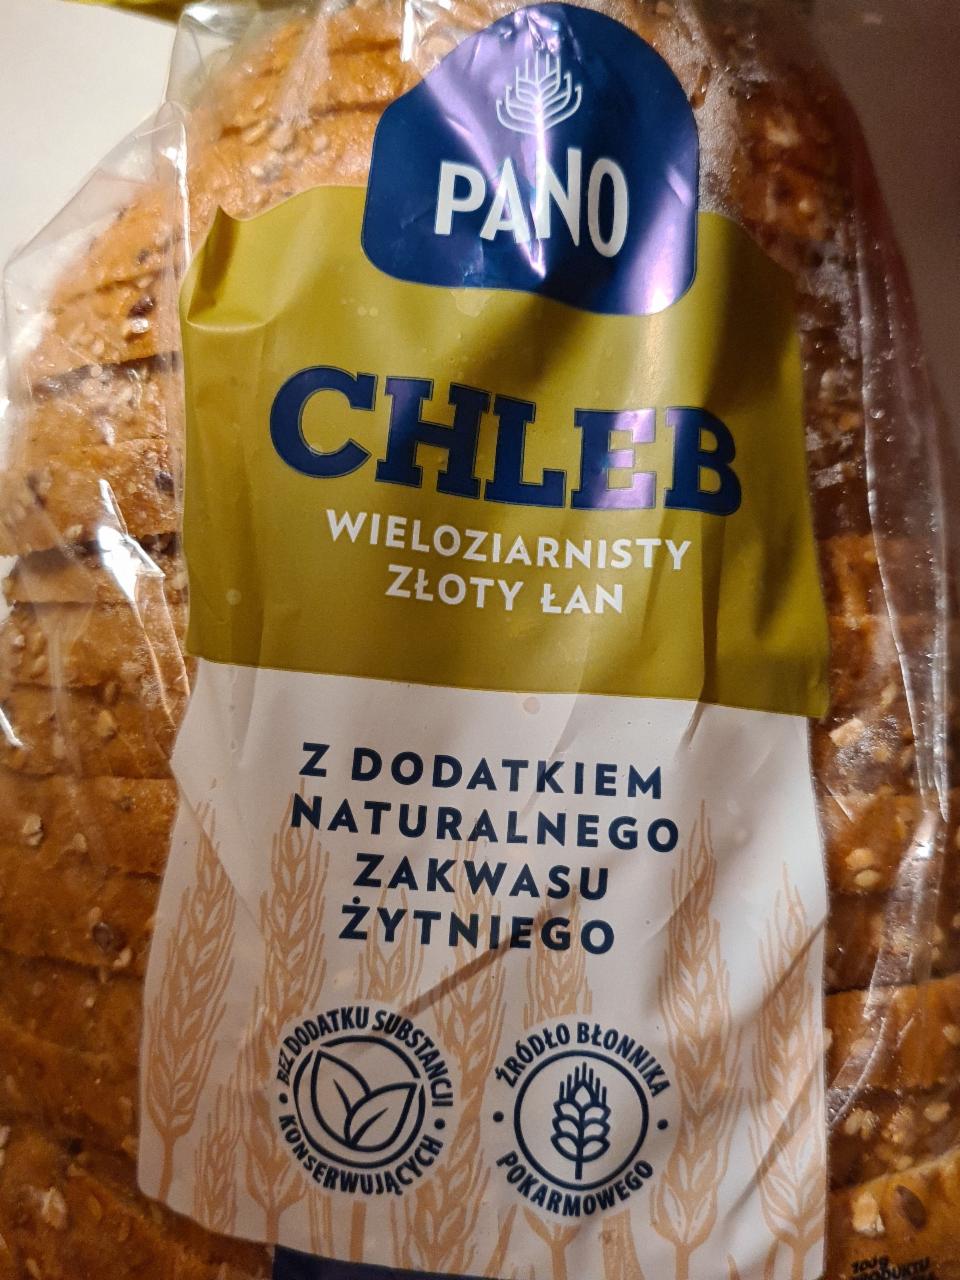 Фото - хлеб многозернистый Pano